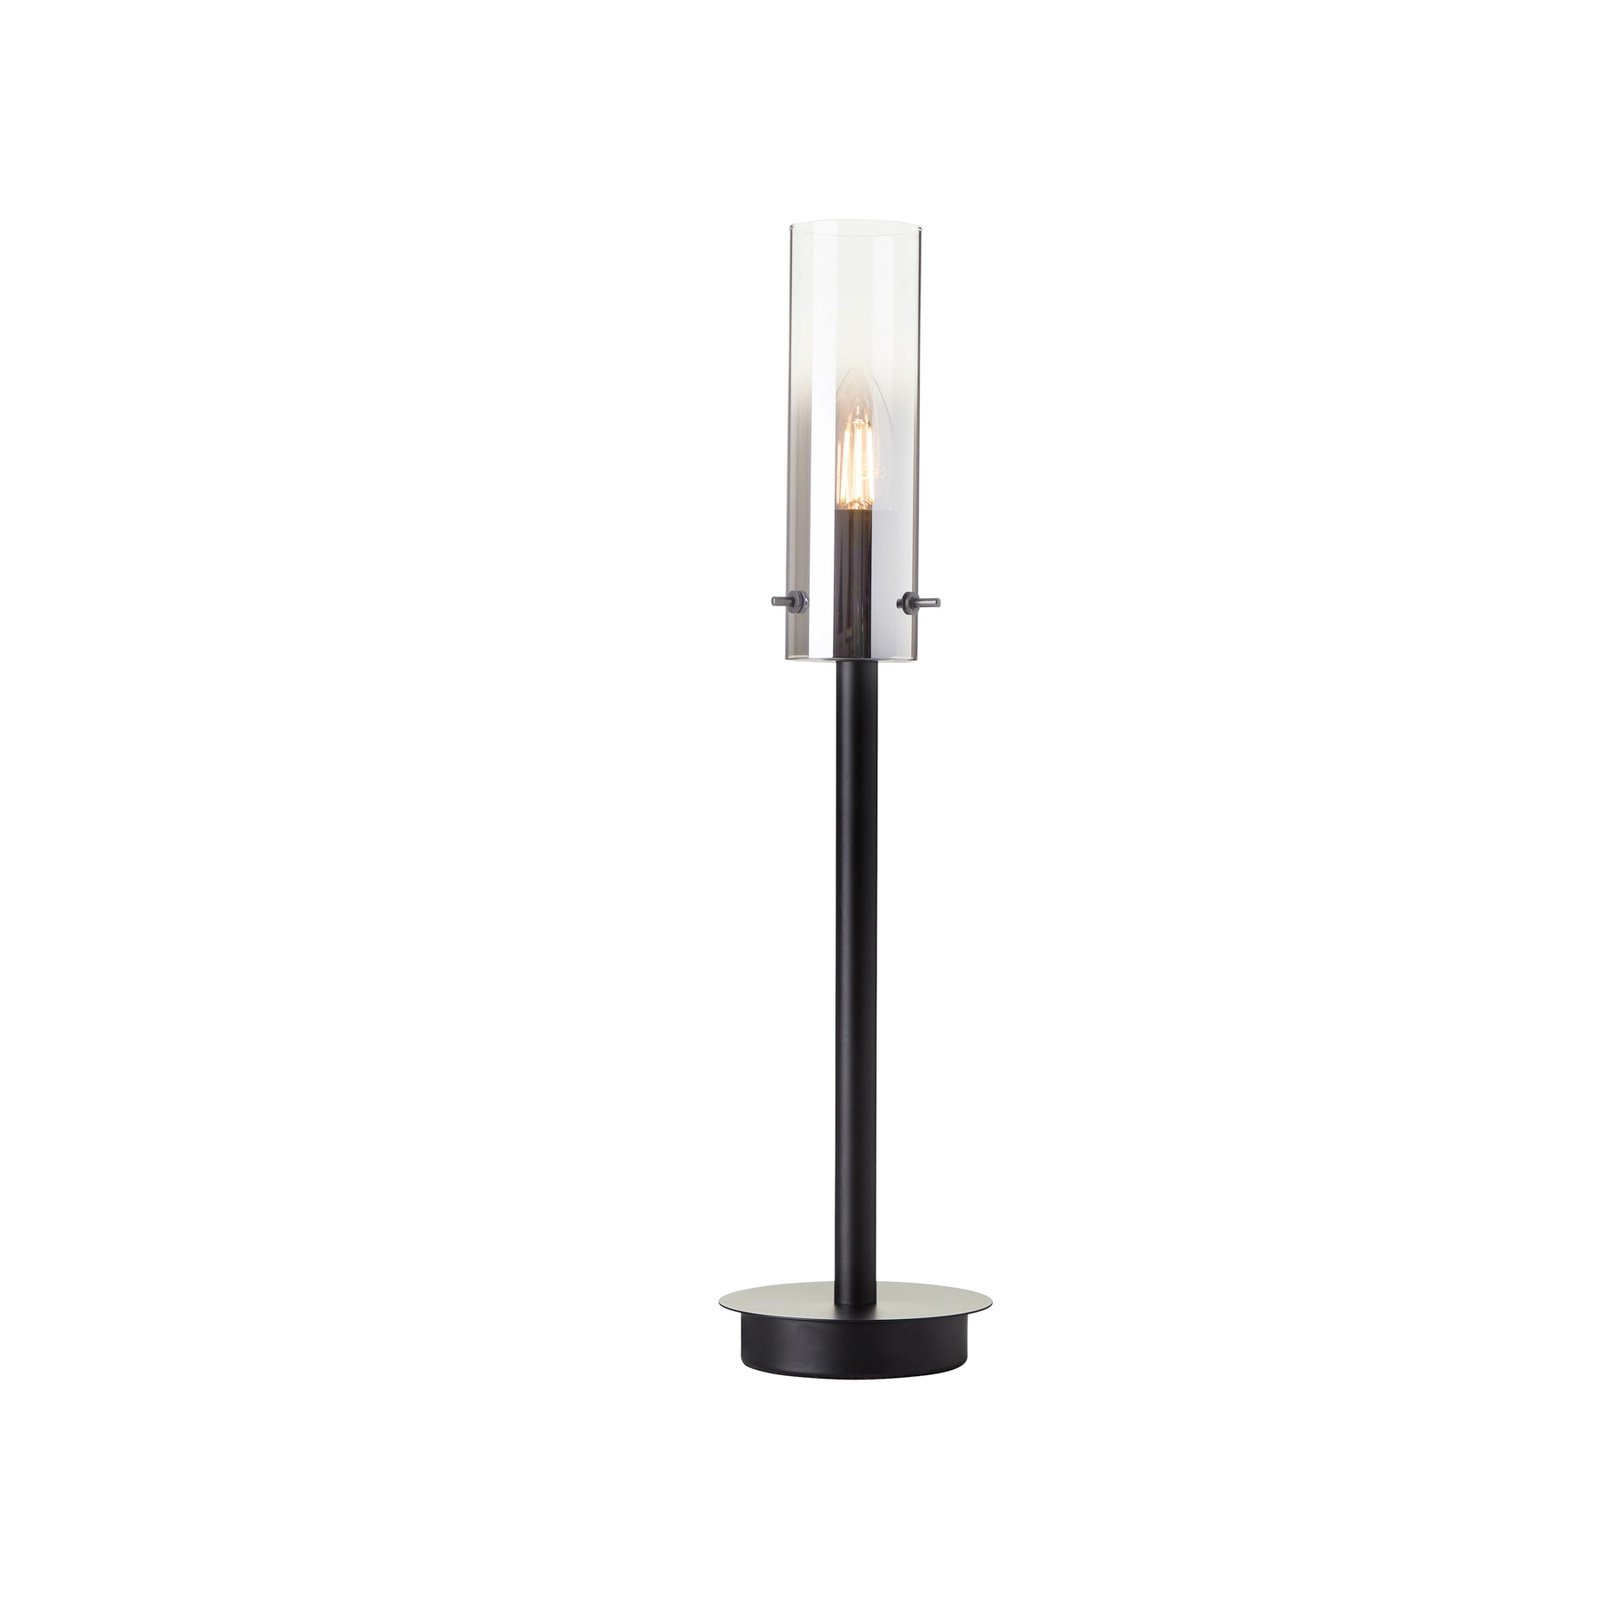 Glasini bordlampe, høyde 49,5 cm, røykgrå/svart, glass